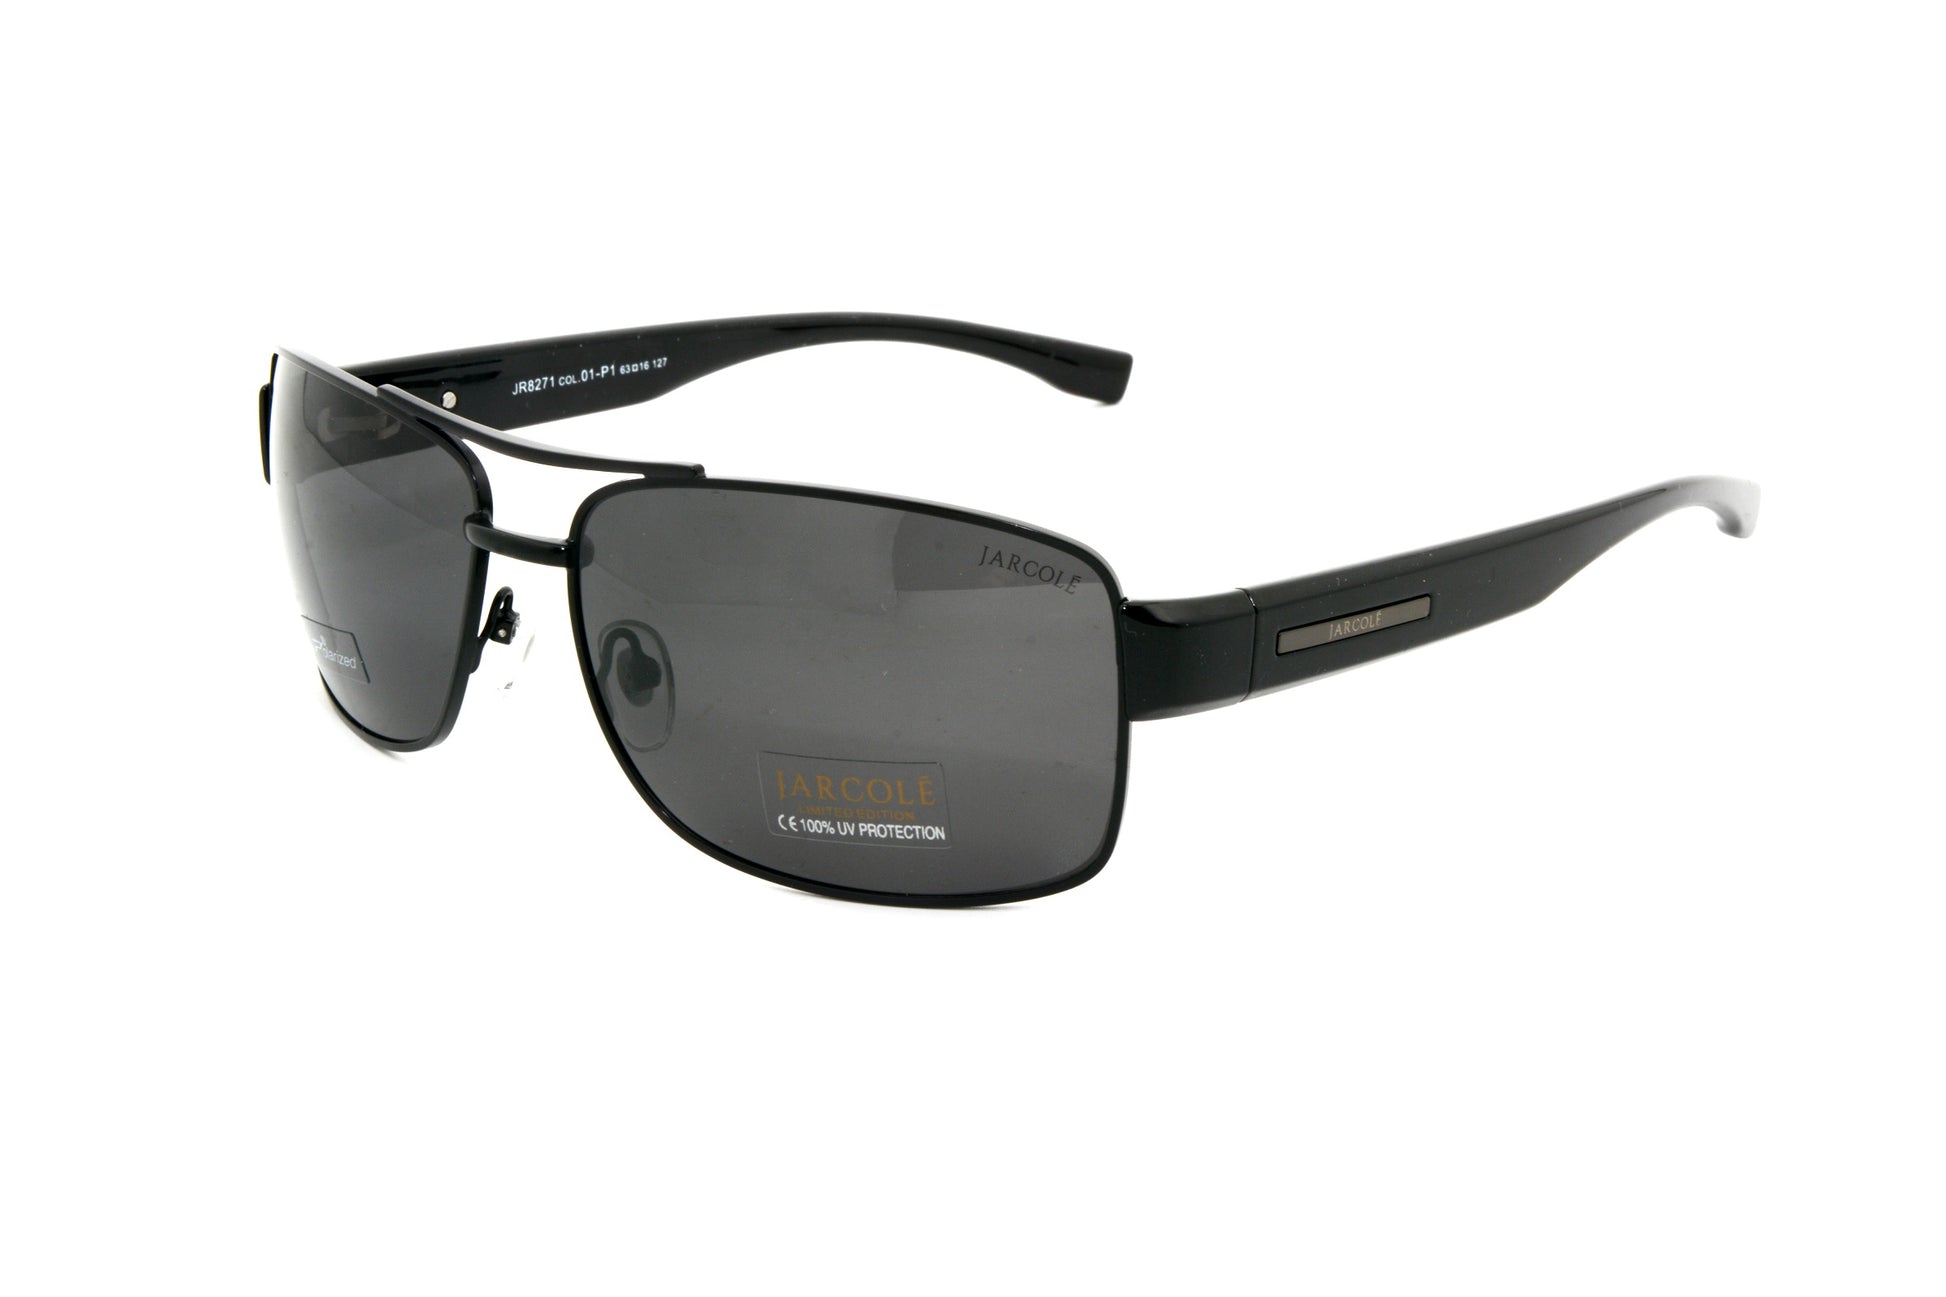 Jarcole sunglasses JR8271 01-P1